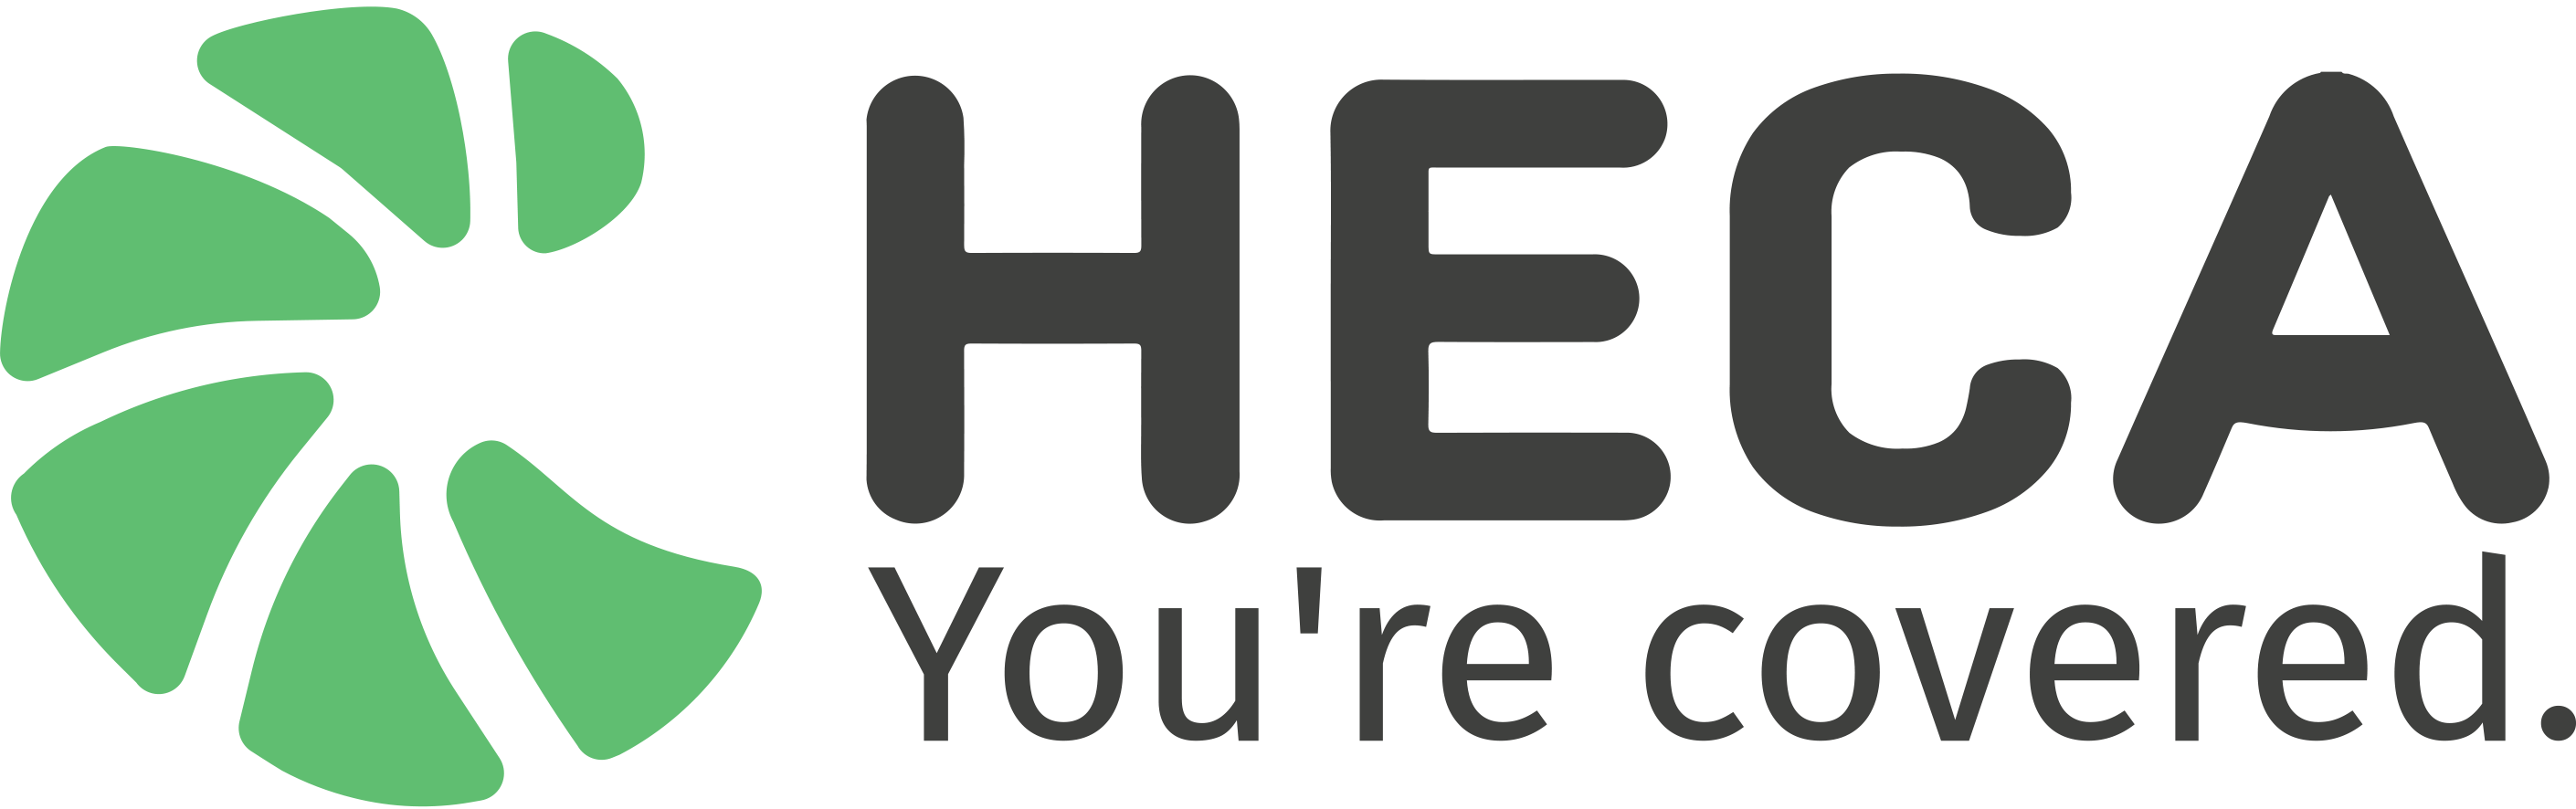 logo Heca